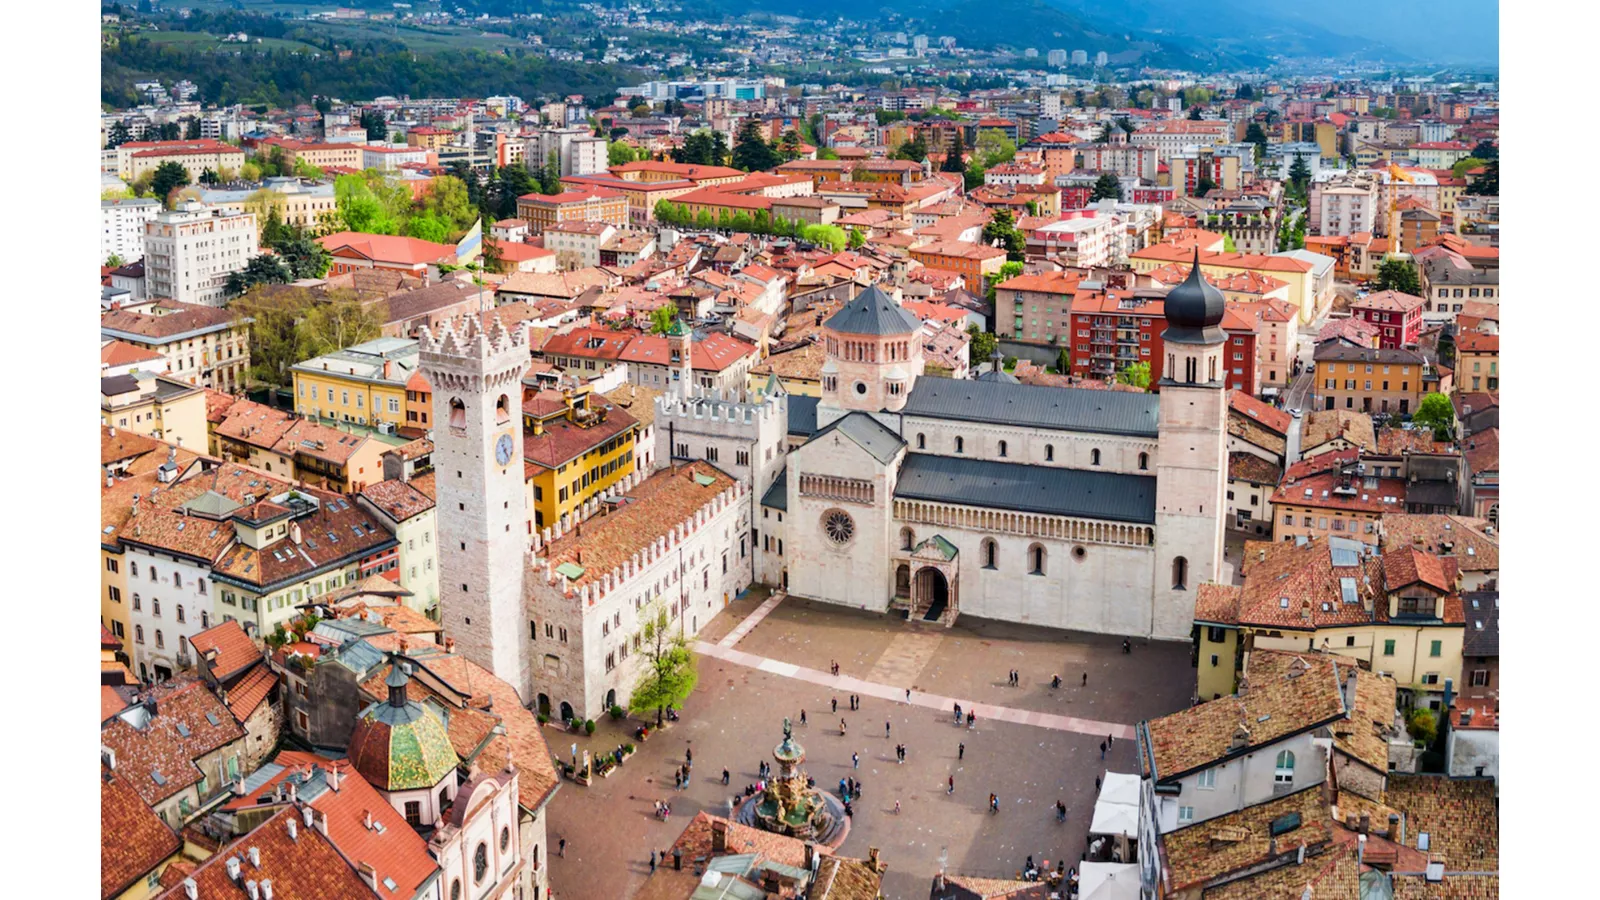 Piazza del Duomo - Trento, Trentino